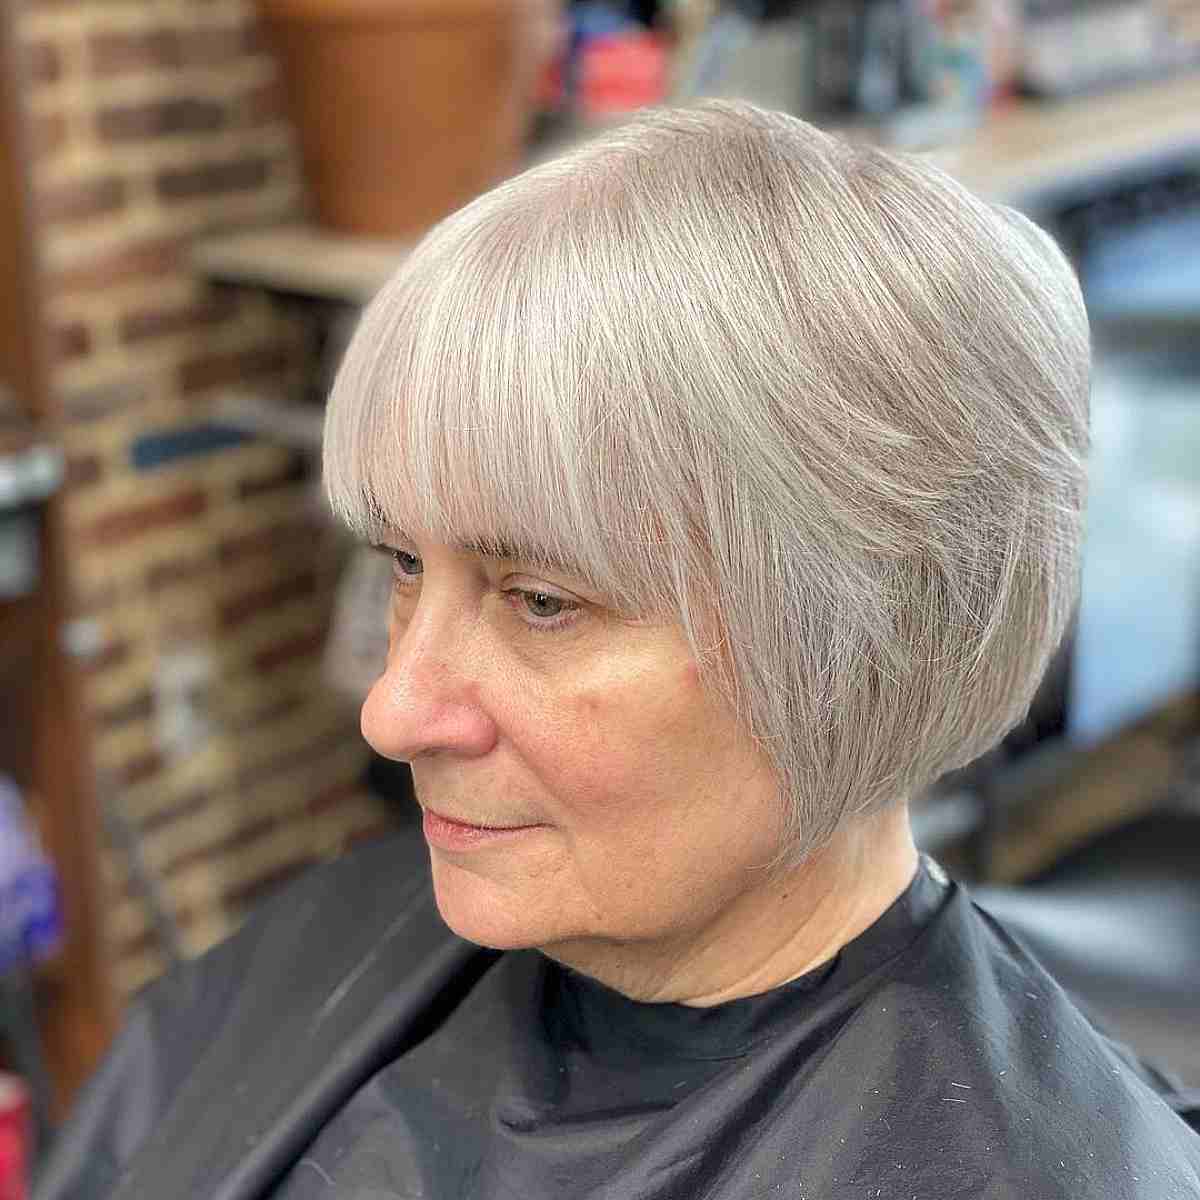 Tapered Bob Haircut on Grey Hair at the Jawline